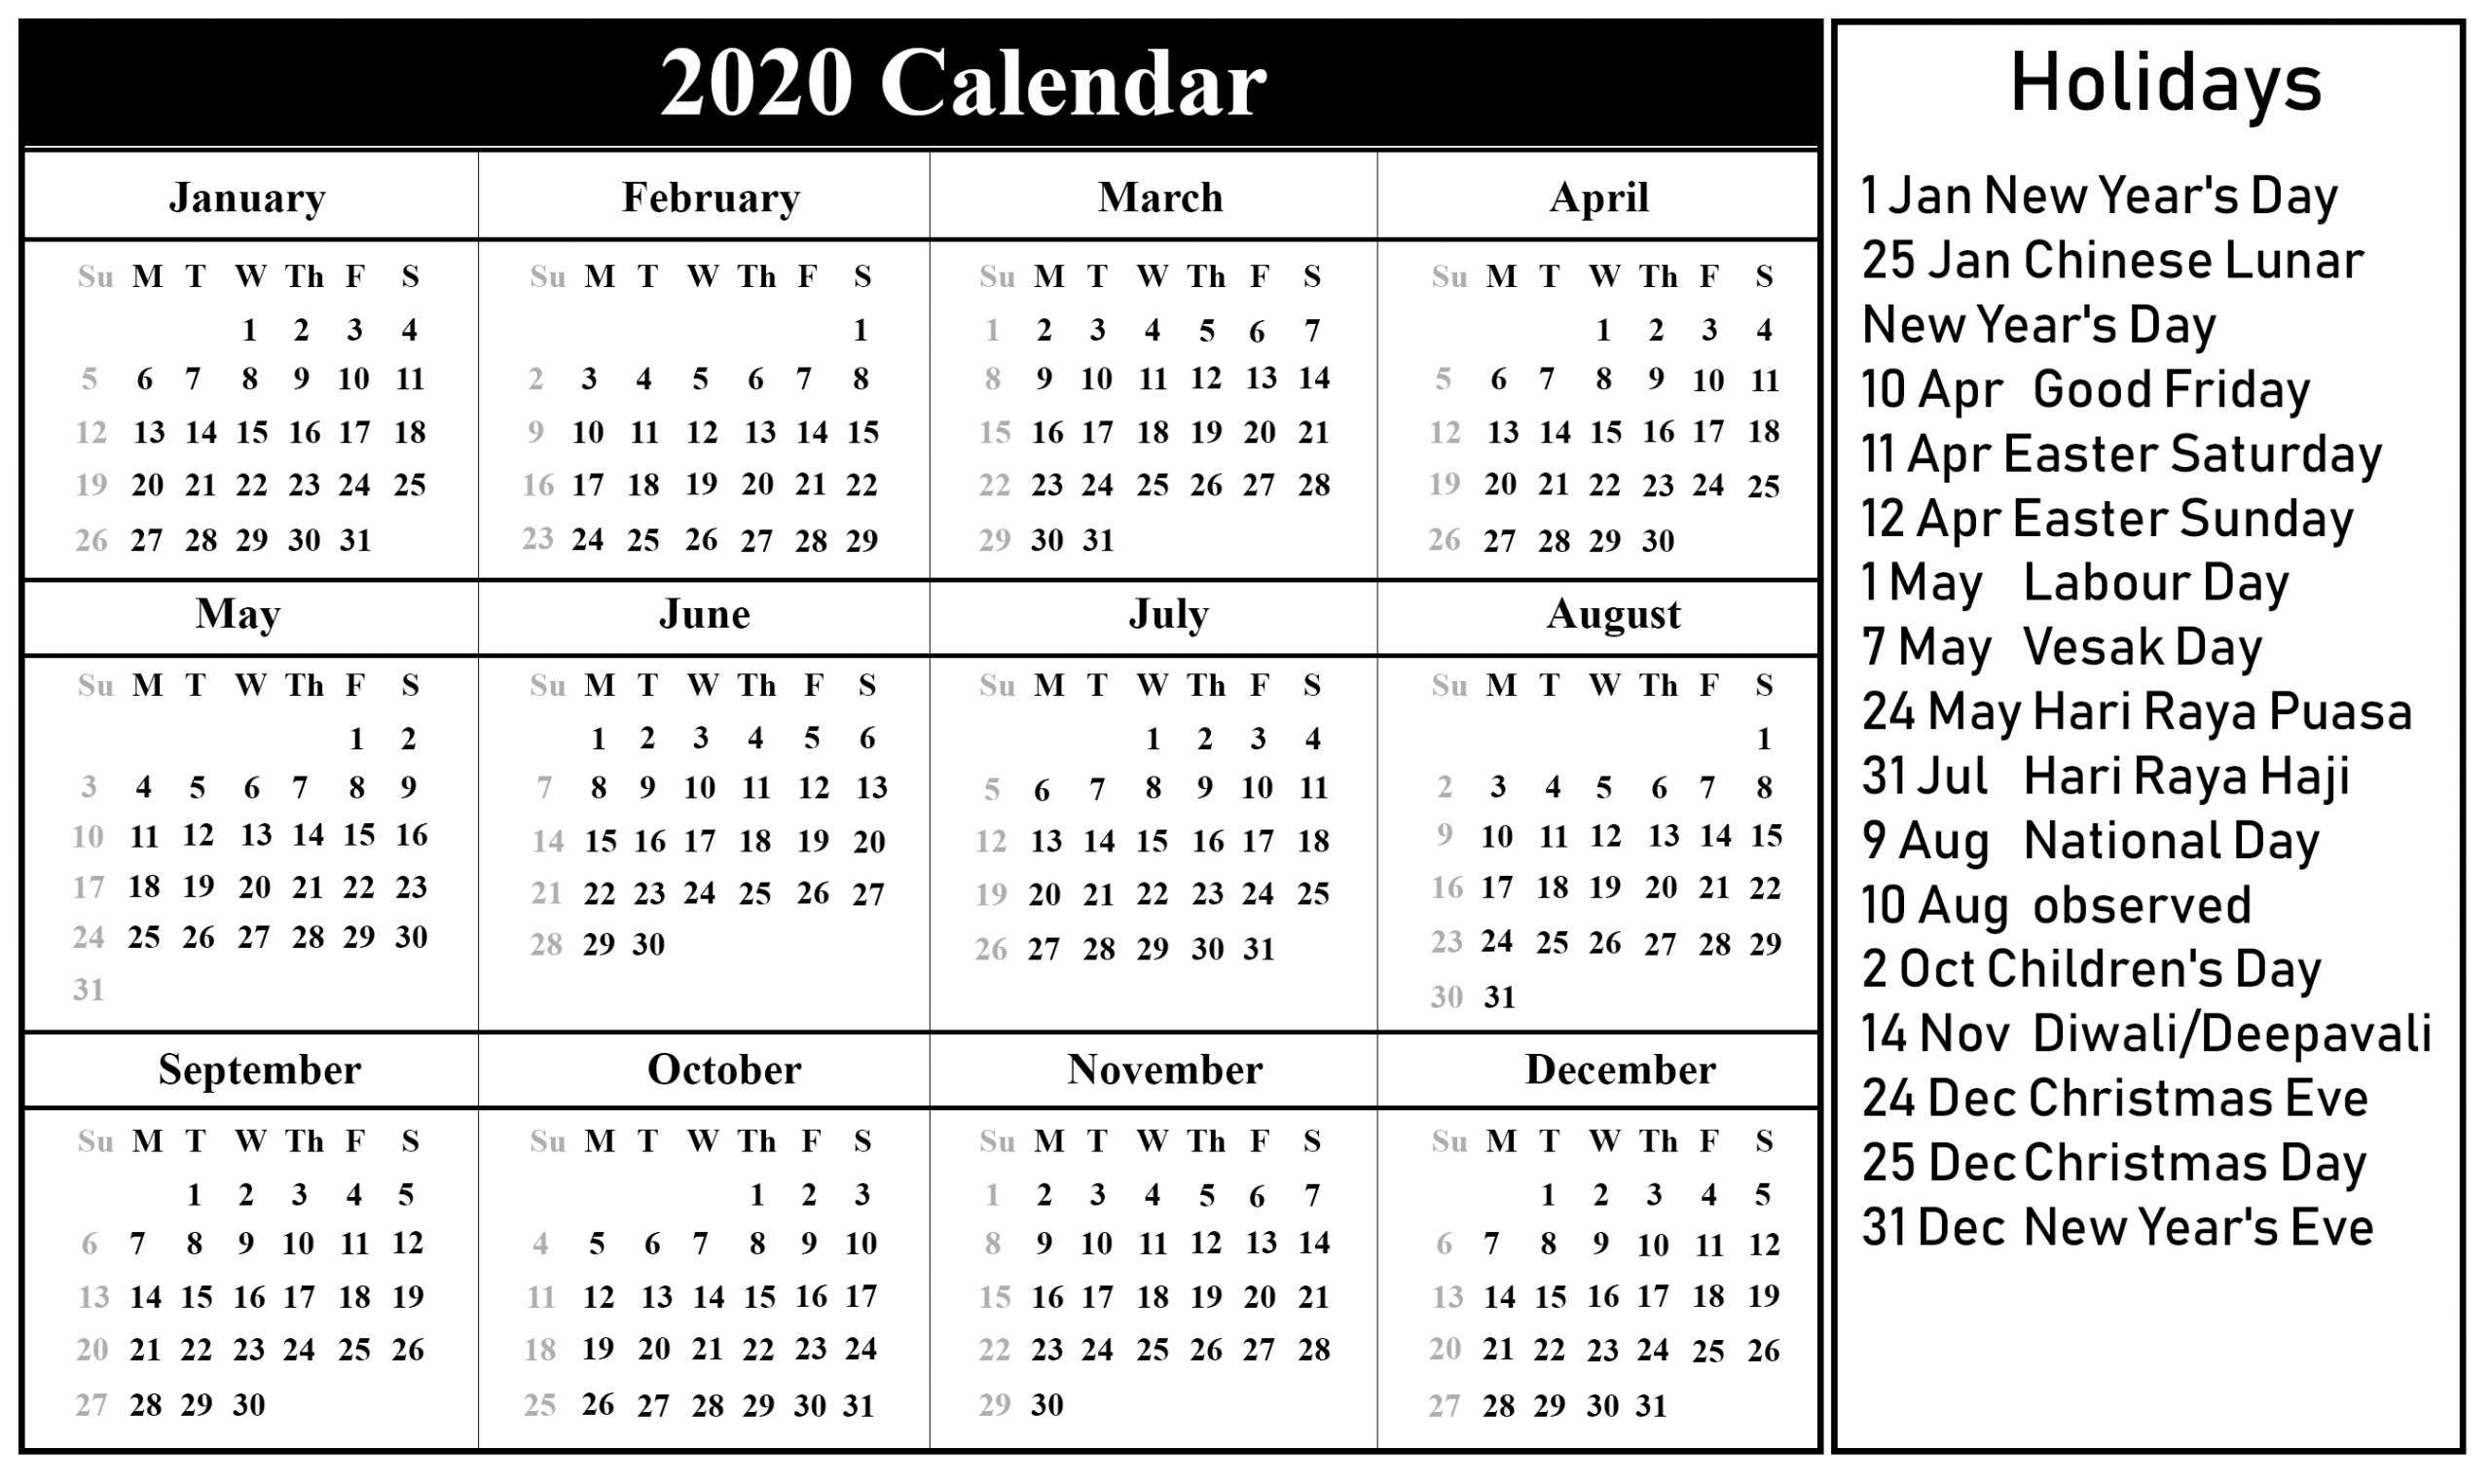 2020 Year Calendar With Holidays - Firuse.rsd7 Extraordinary 2020 Holiday Calendar Printable